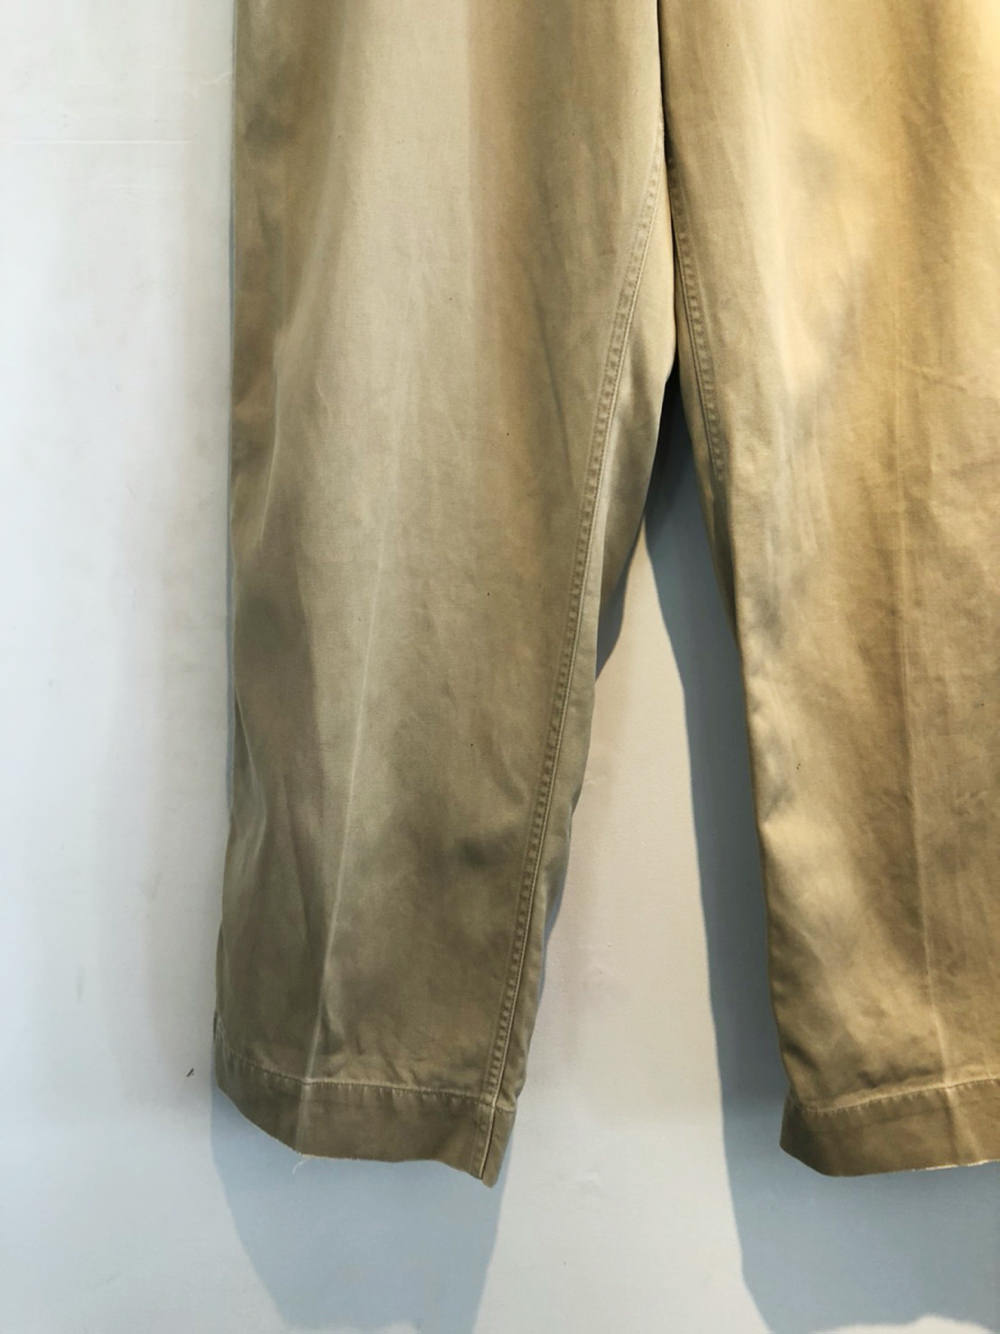 ヴィンテージ ミリタリーチノパン【U.S.ARMY】【1940s-】Vintage Chino Trousers